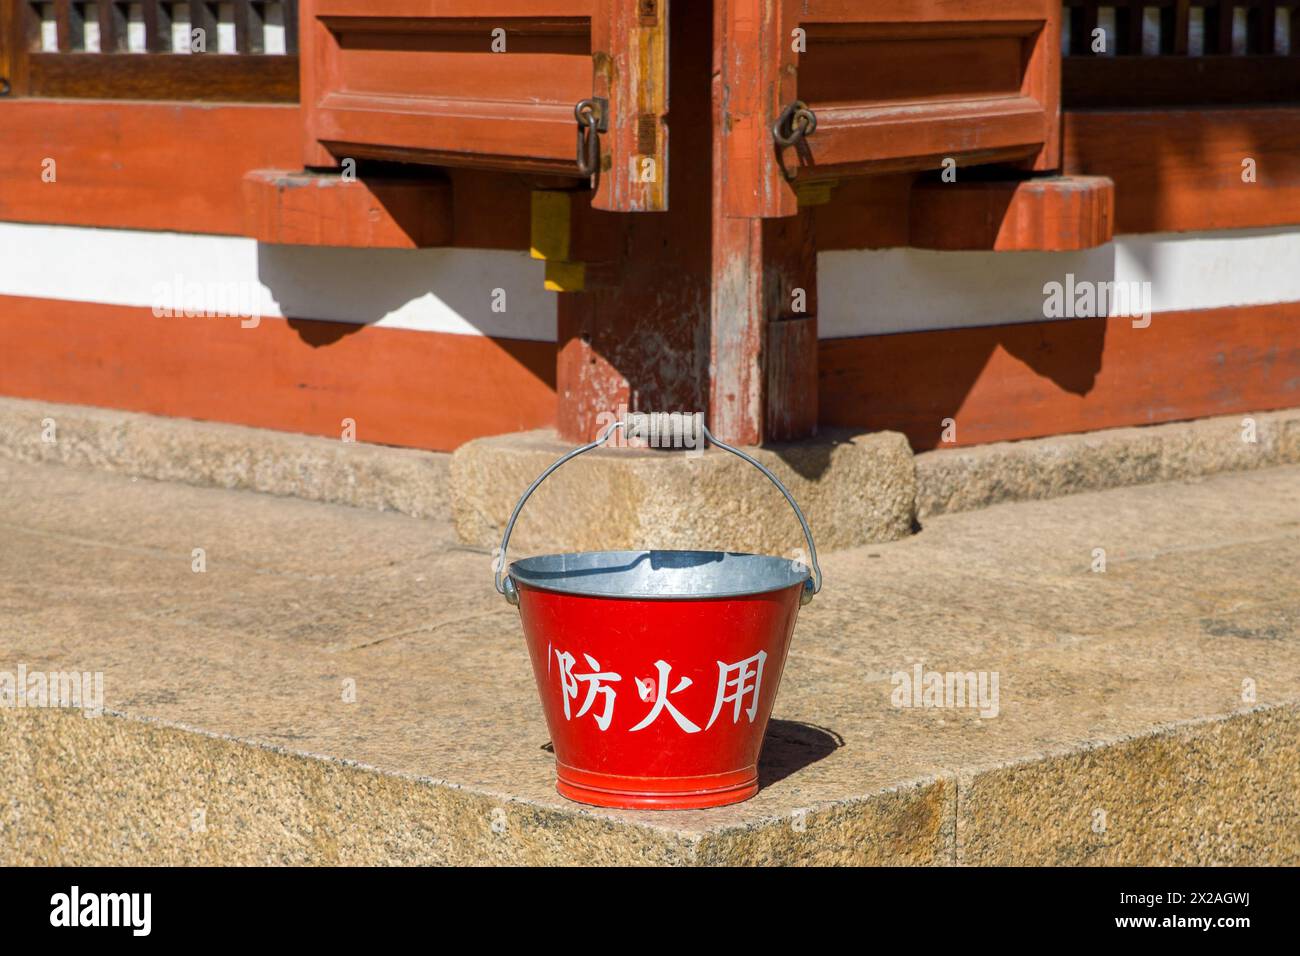 un seau rouge avec l'inscription japonaise 'pour la protection contre l'incendie' devant un vieux bâtiment en bois Banque D'Images